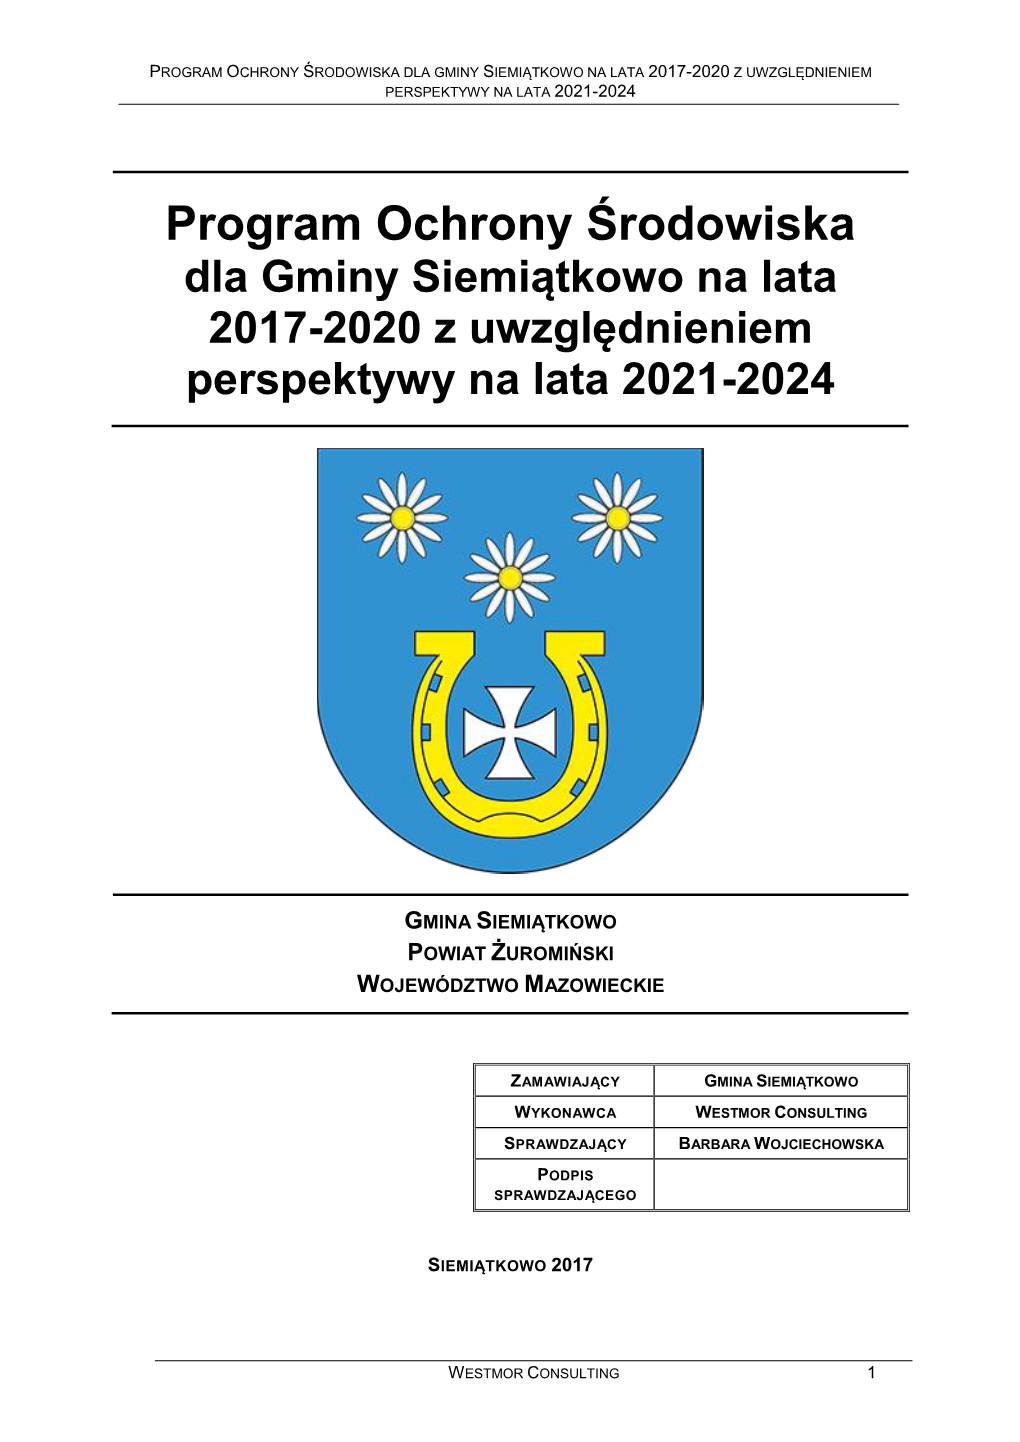 Program Ochrony Środowiska Dla Gminy Siemiątkowo Na Lata 2017-2020 Z Uwzględnieniem Perspektywy Na Lata 2021-2024